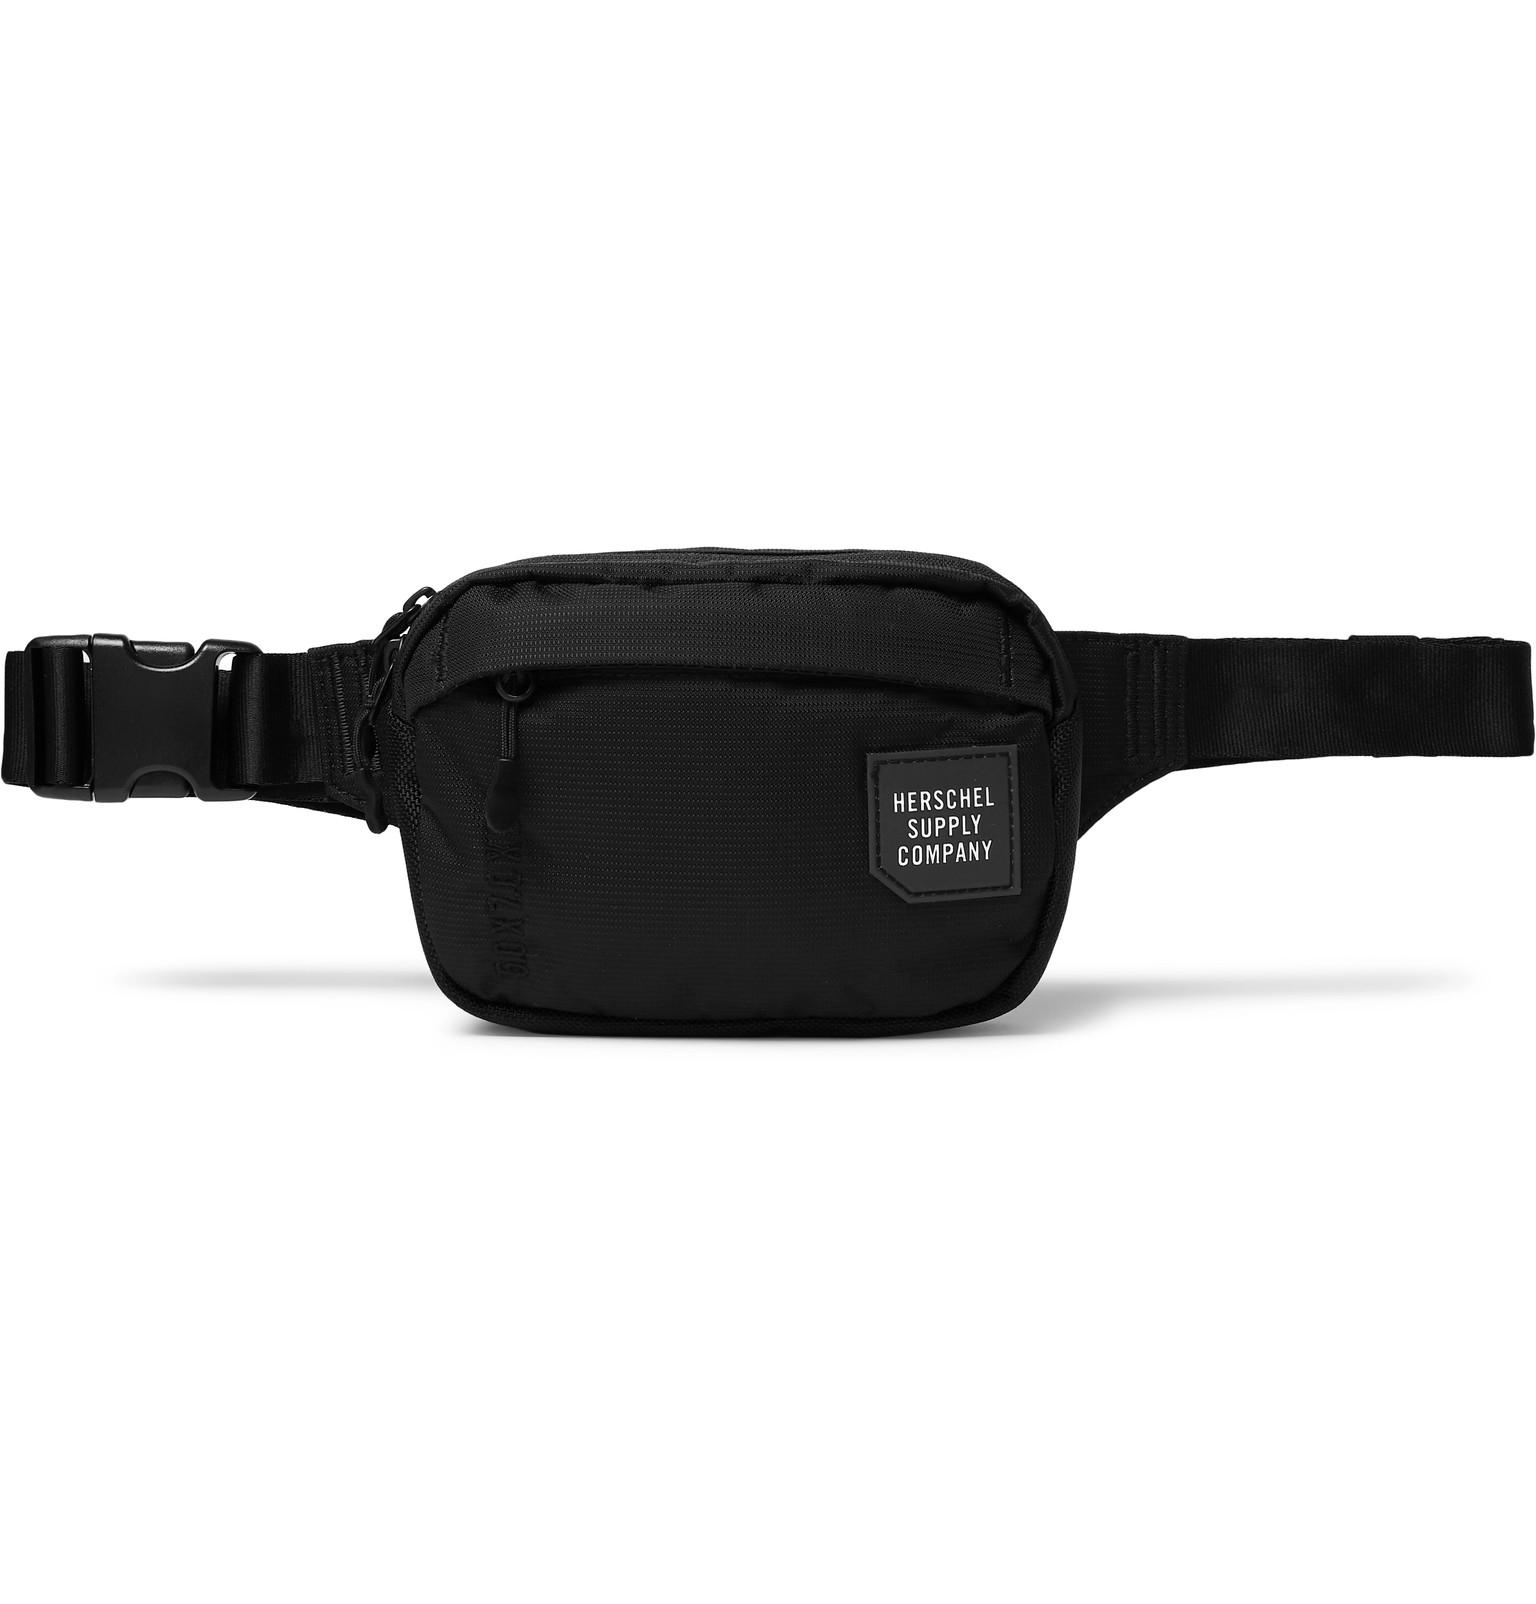 Herschel Supply Co. Tour Small Nylon Belt Bag in Black for Men - Lyst